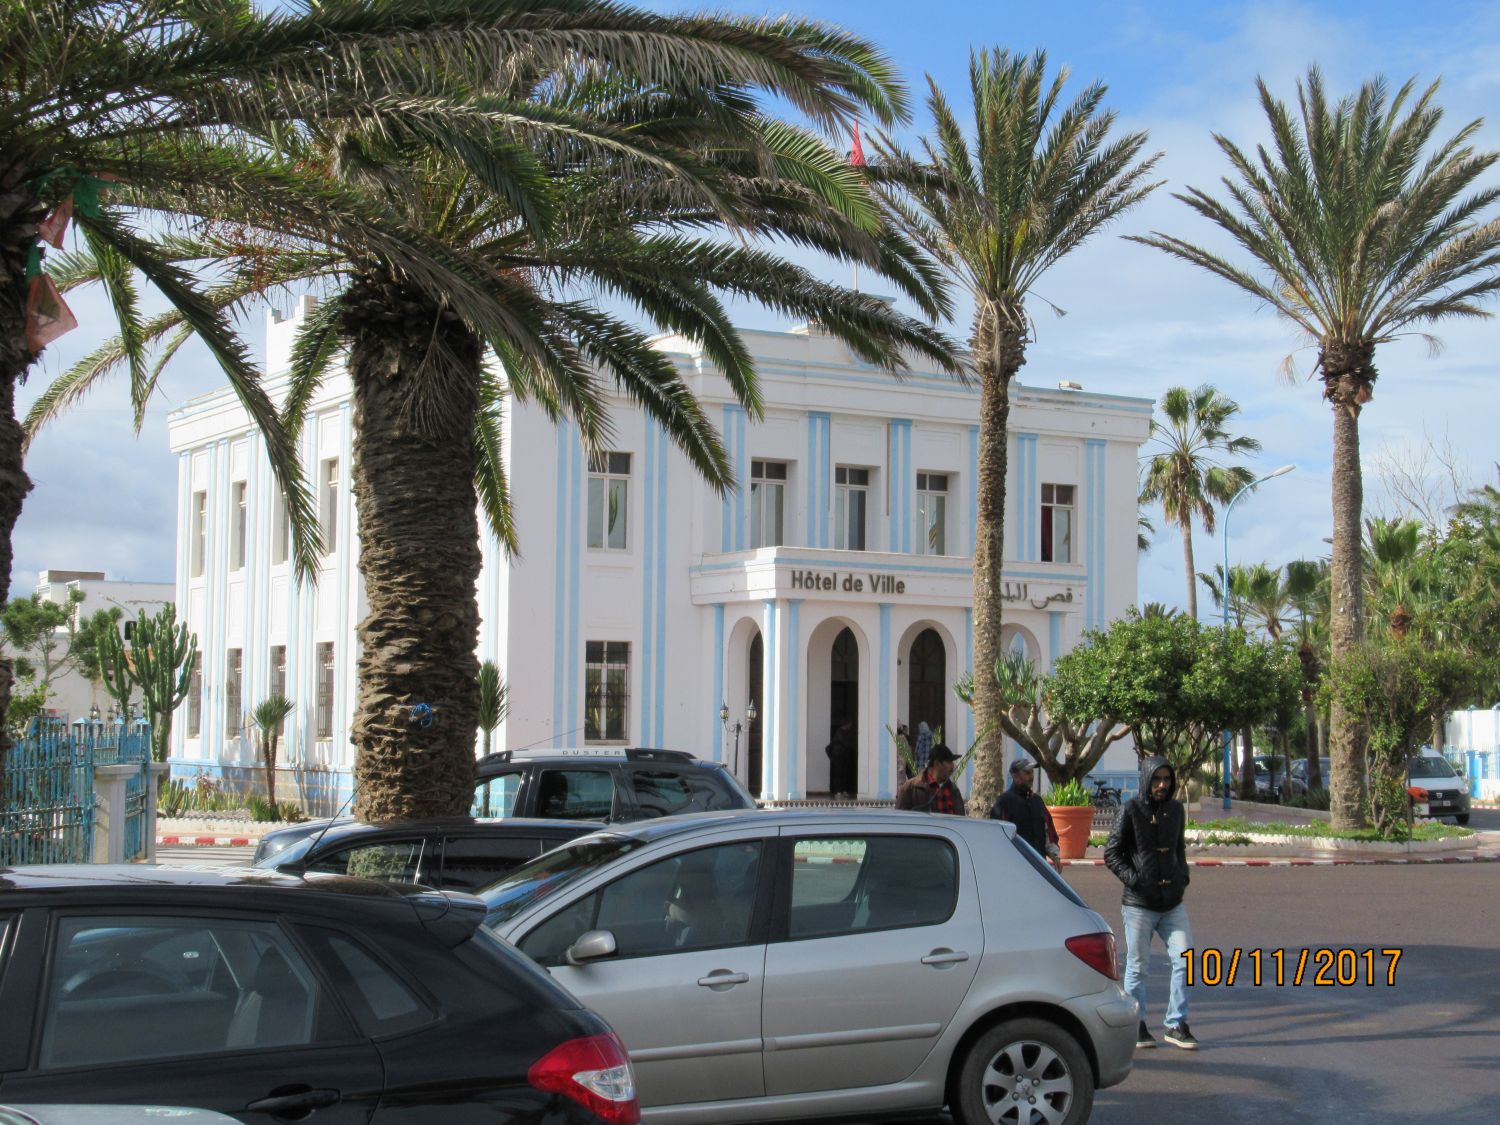 Sidi Ifni city municipality.